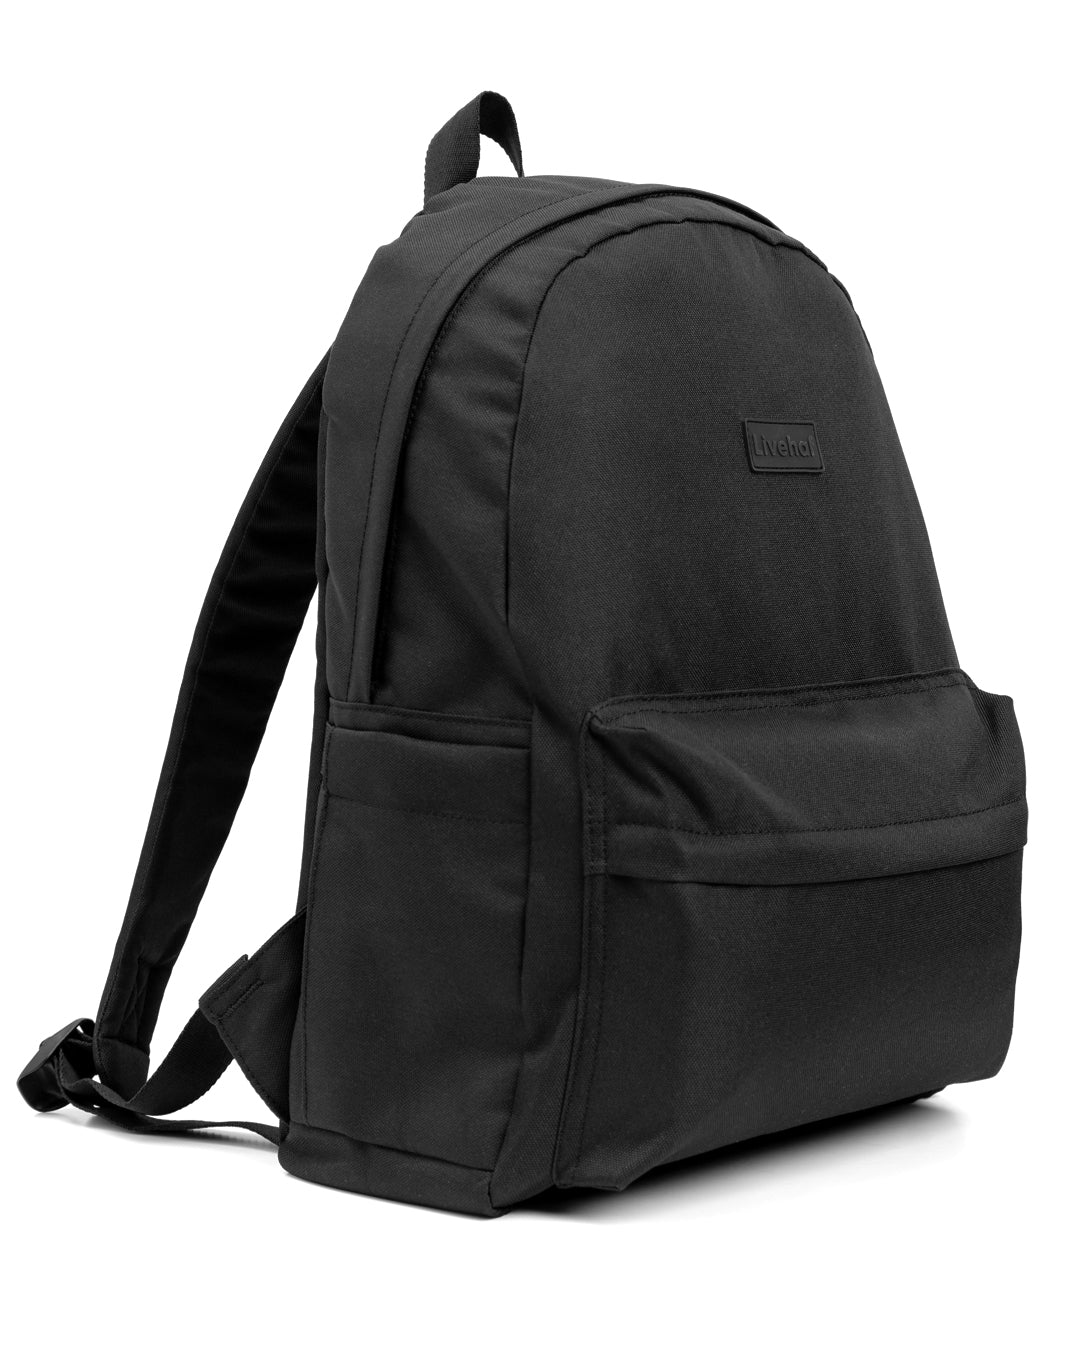 Essential Backpack Black